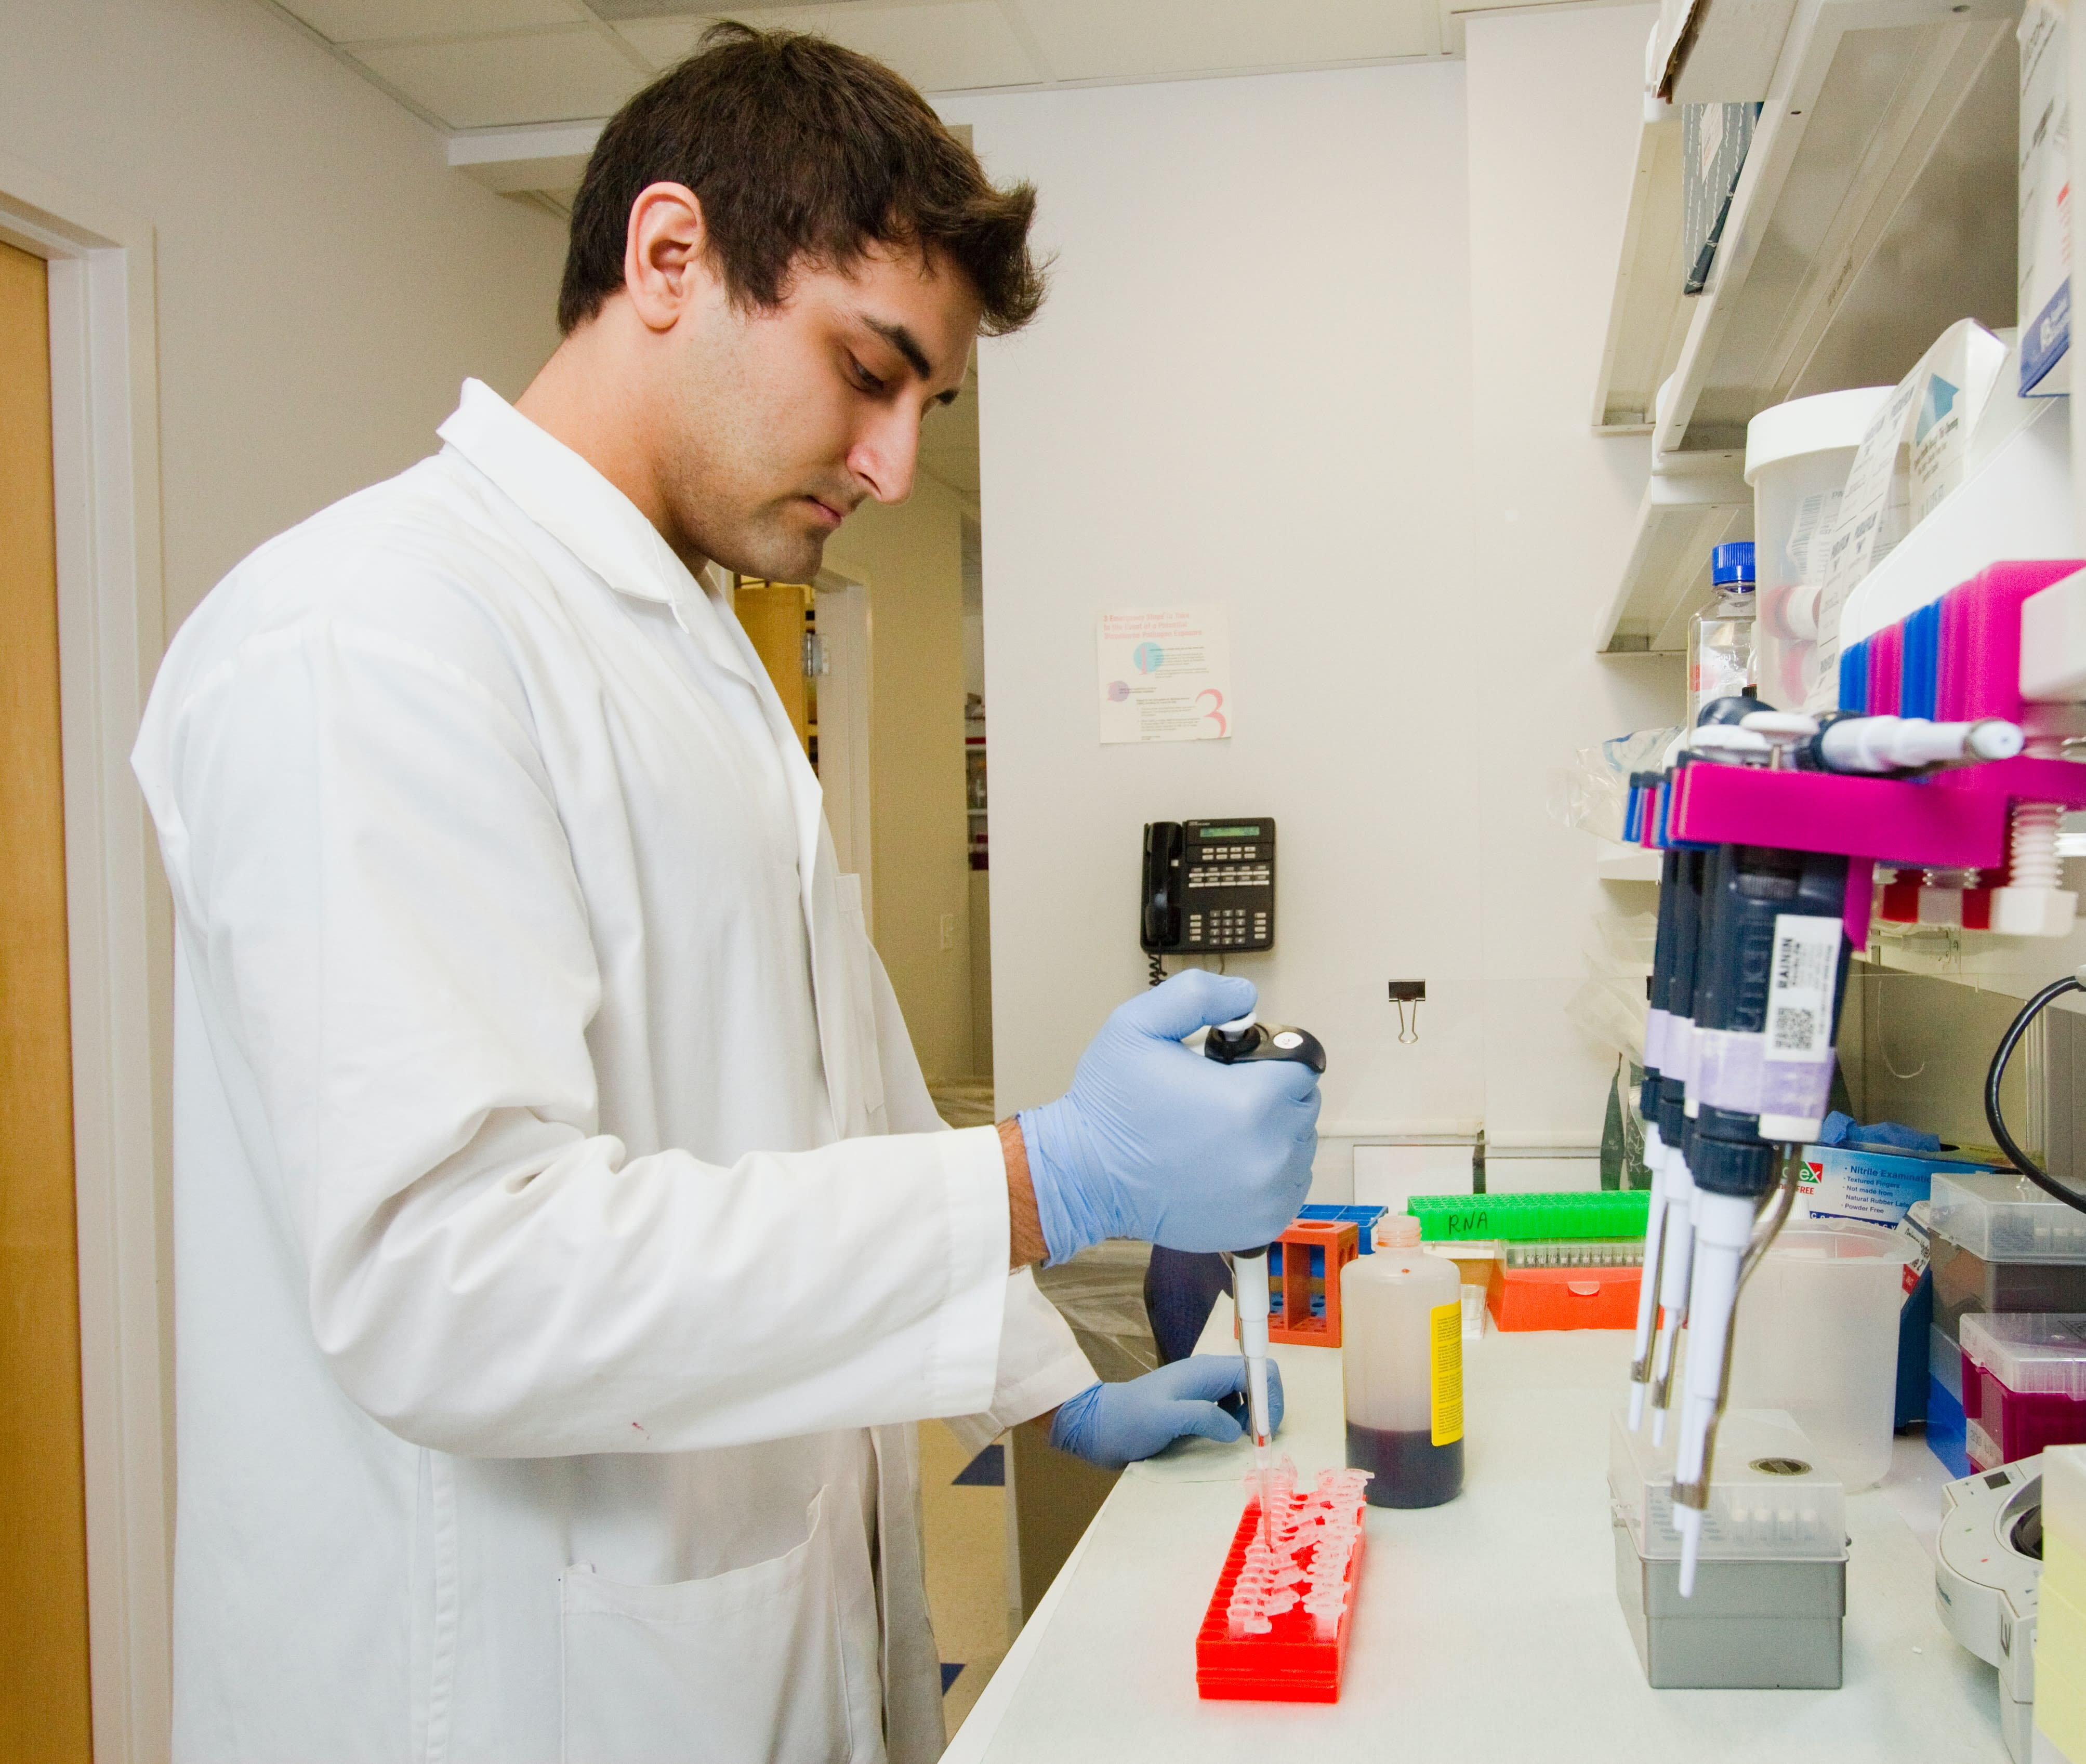 Mužský vědec v laboratoři pipetuje proteinové činidlo do eppendorfských zkumavek.